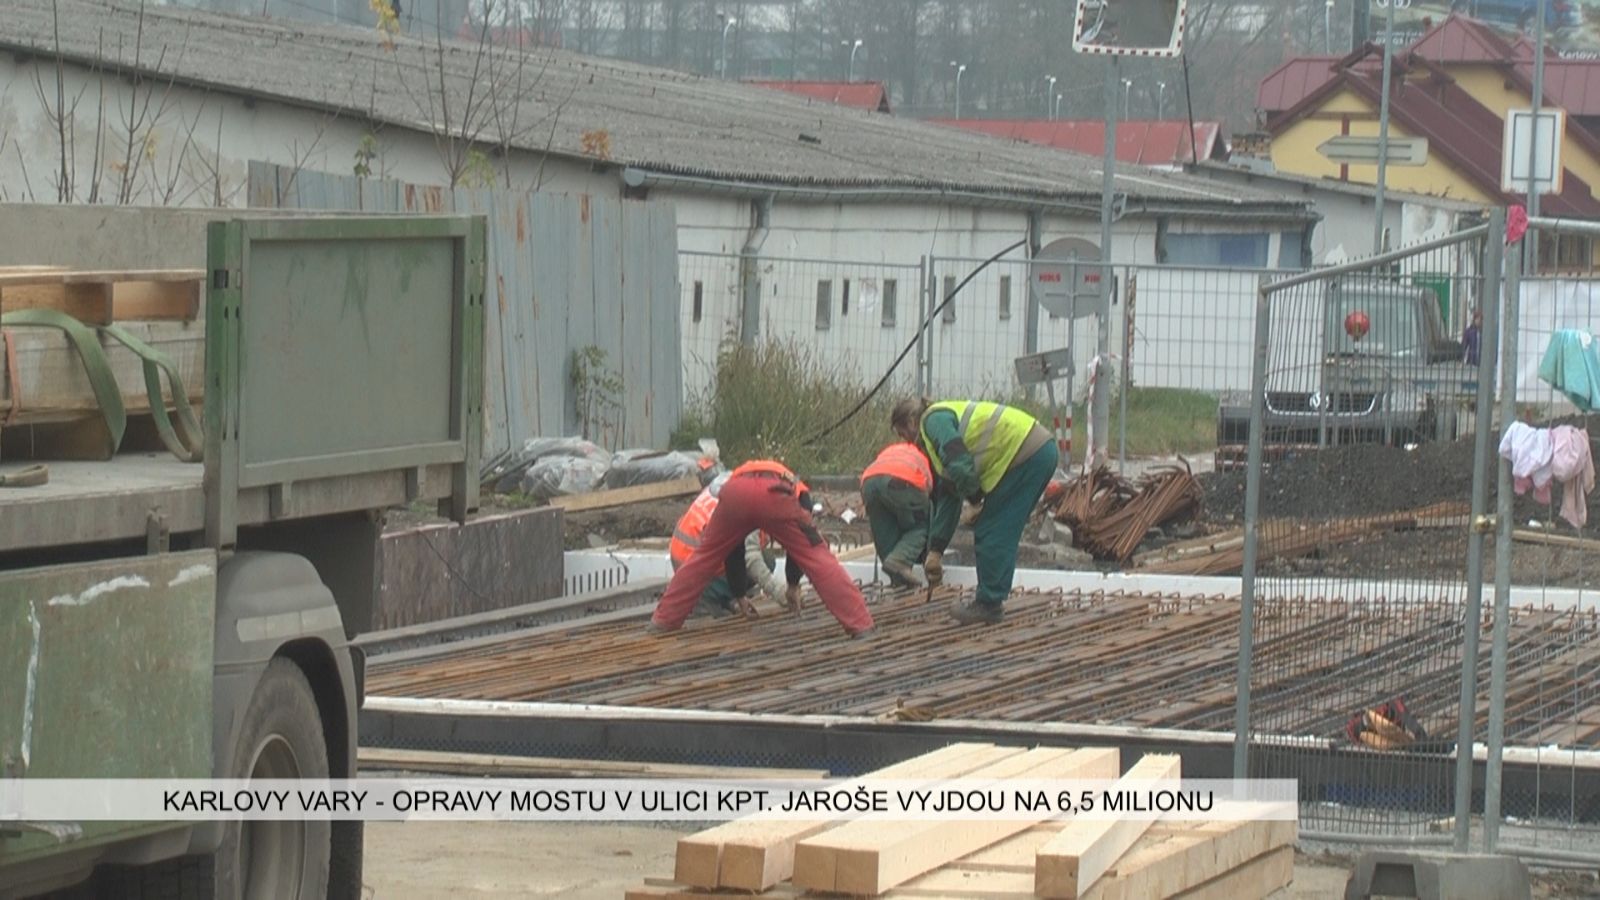 Karlovy Vary: Opravy mostu v ulici kpt. Jaroše vyjdou na 6,5 milionu korun (TV Západ)